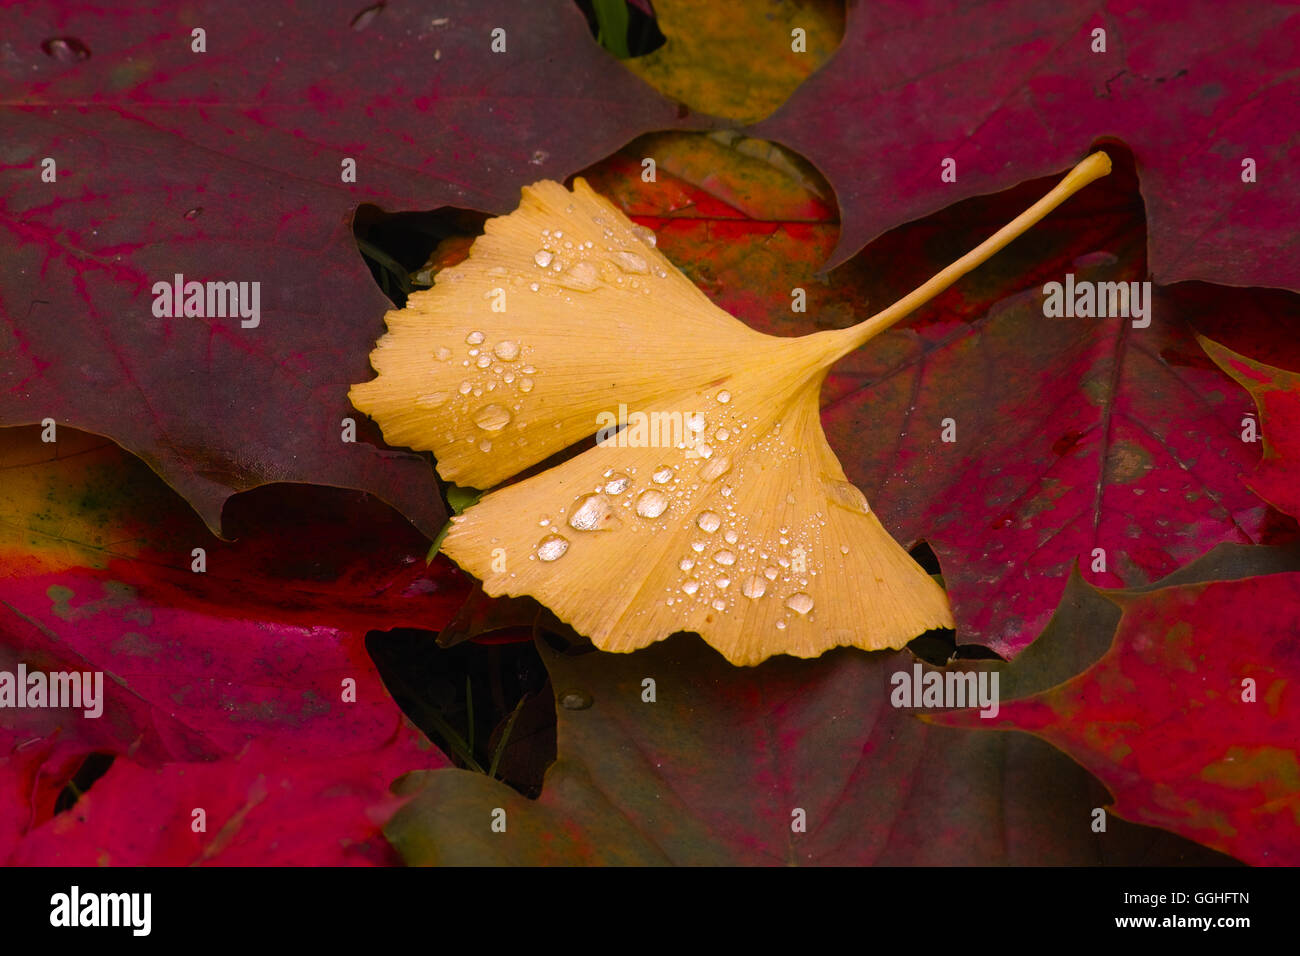 Automne feuilles de ginkgo avec les gouttes de pluie, des herbstlaub mit regentropfen ginkgo (Ginkgo biloba) Banque D'Images